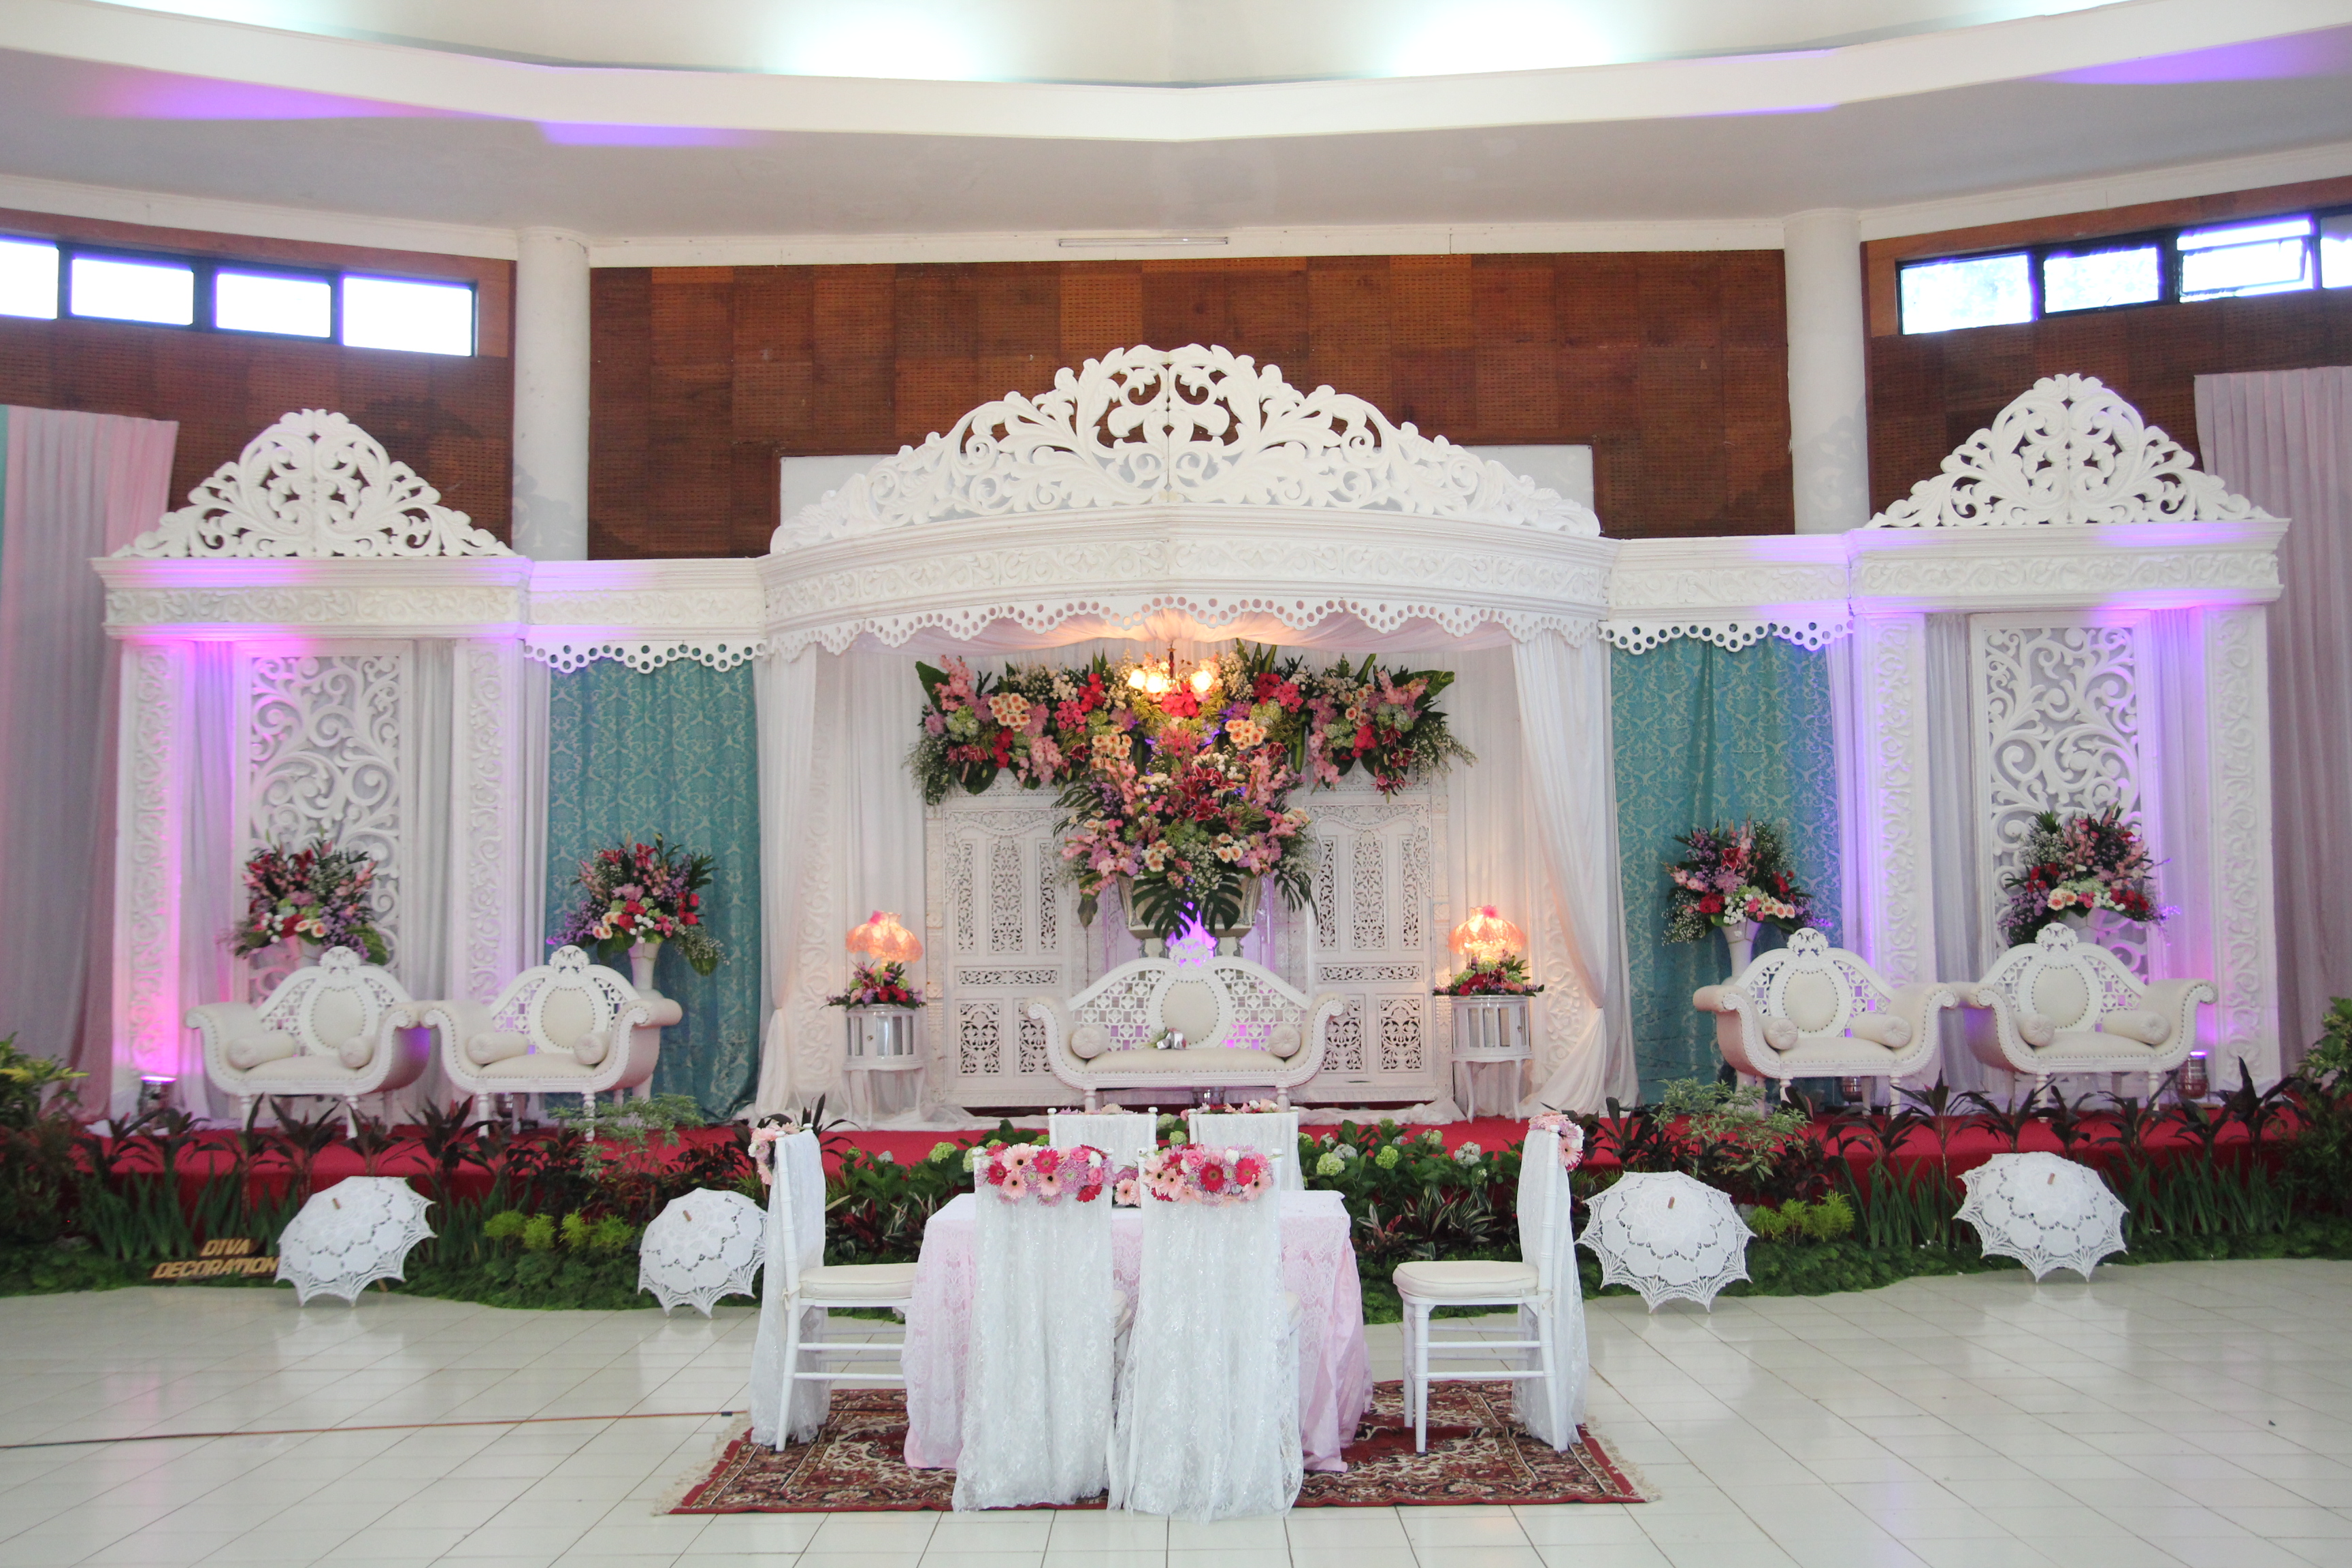 Bogor Bride to be a dream wedding come true